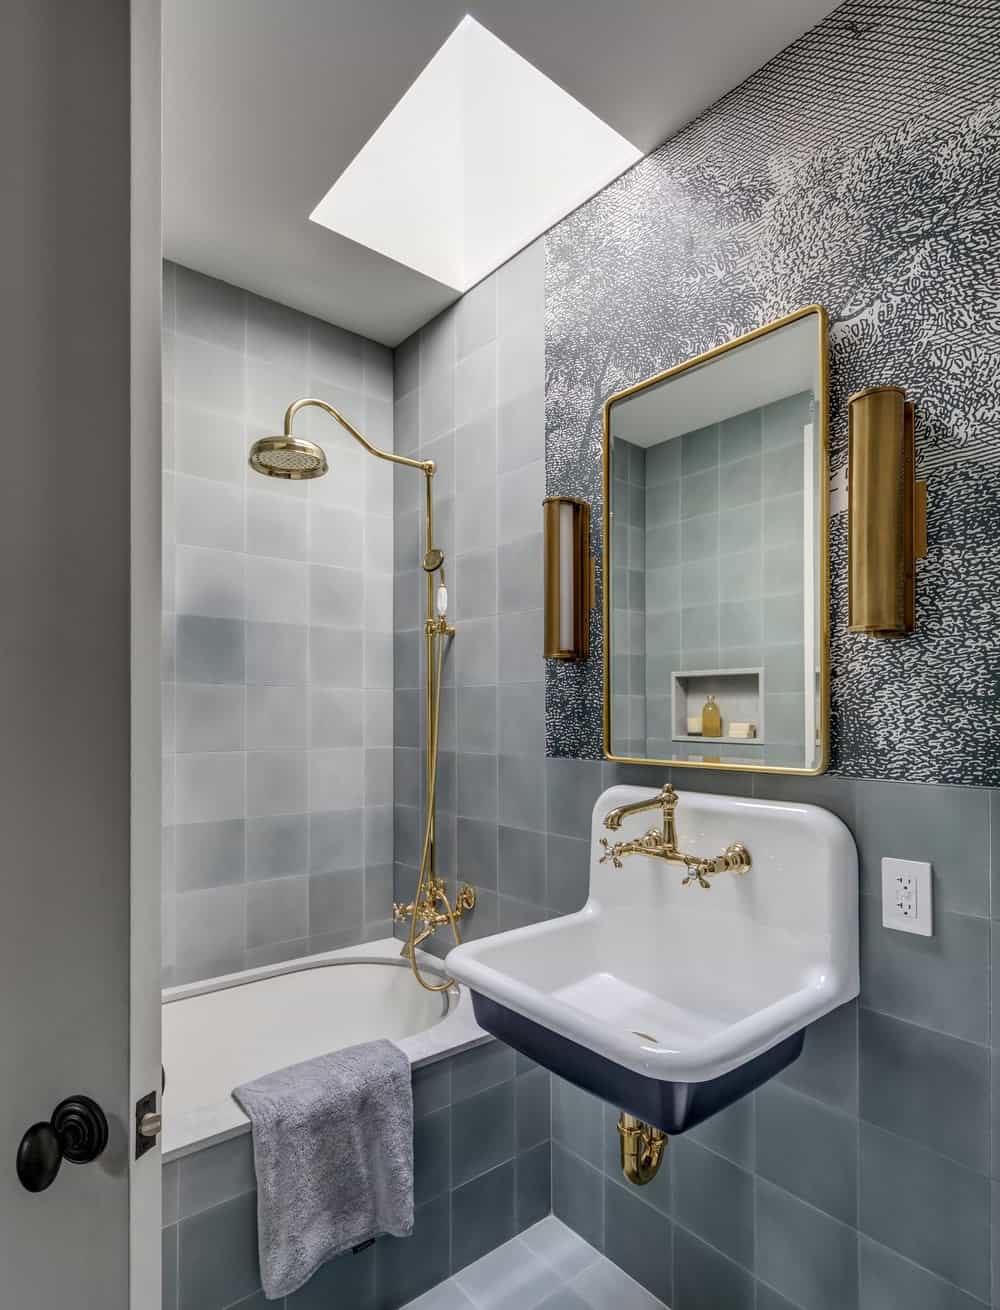 浴室墙壁上贴着一致的灰色瓷砖，使青铜固定装置和白瓷水槽和浴缸格外显眼。